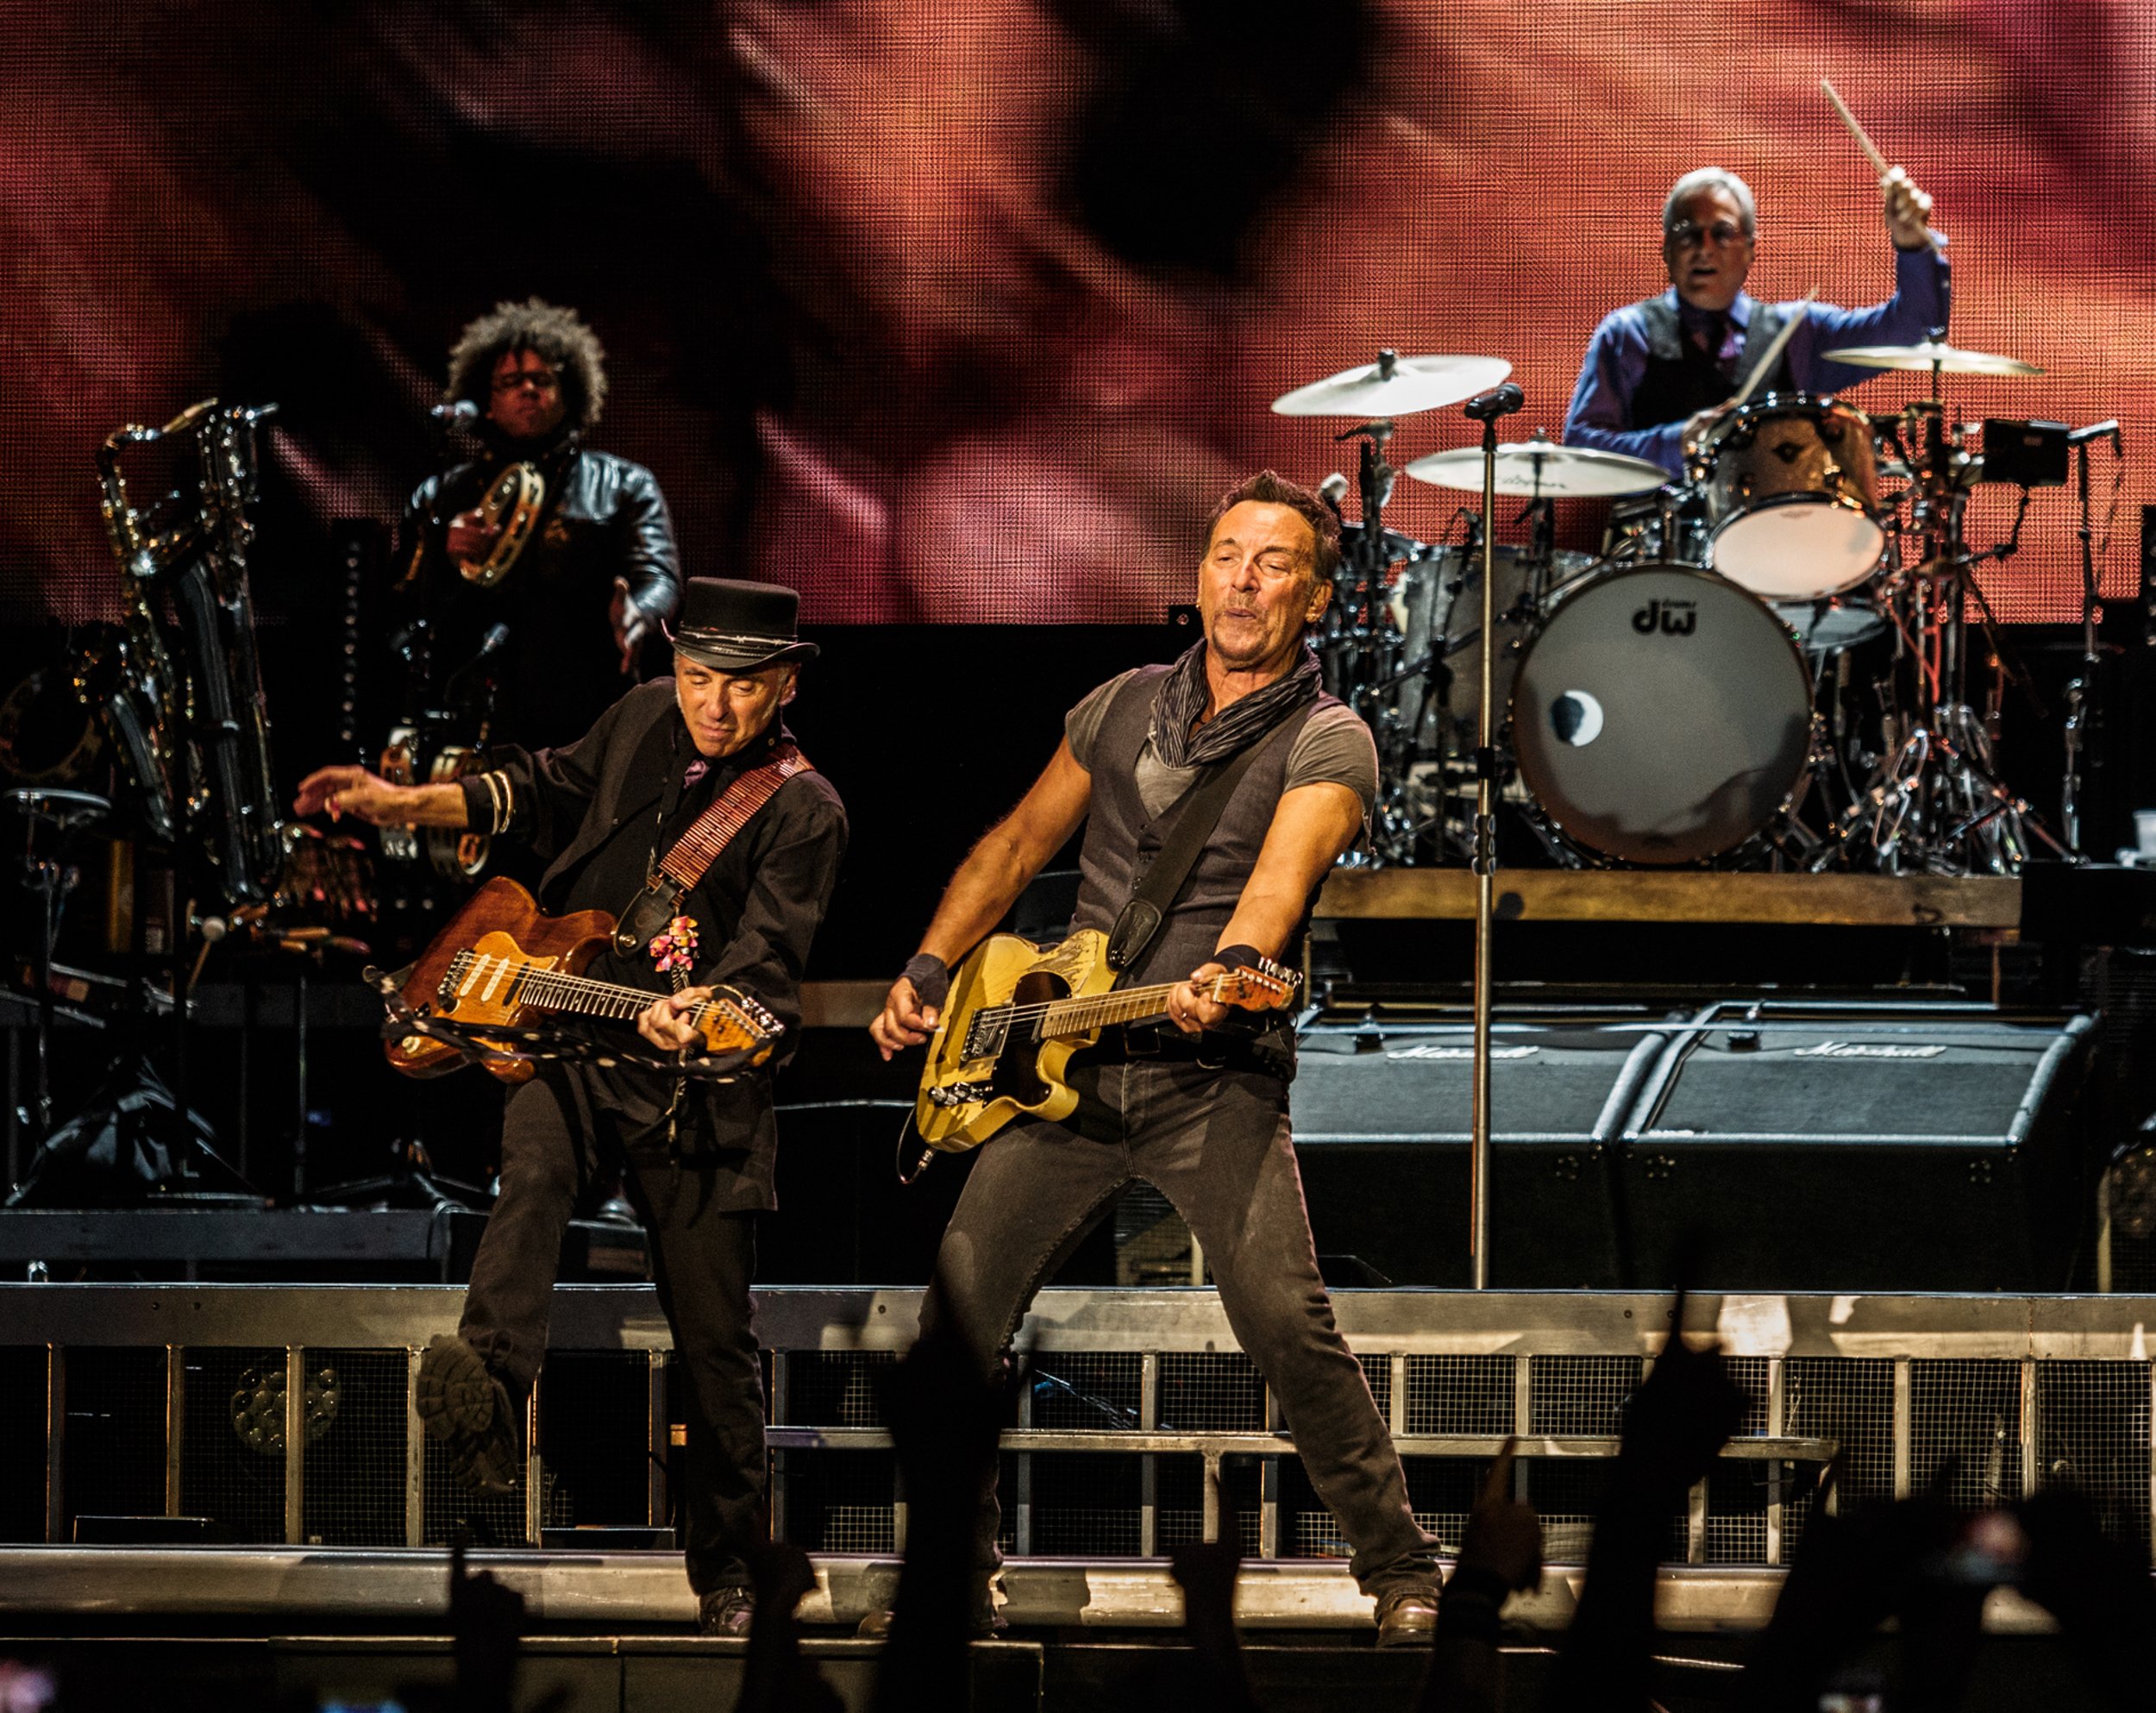 Els concerts de Bruce Springsteen a Barcelona no perillen tot i el covid